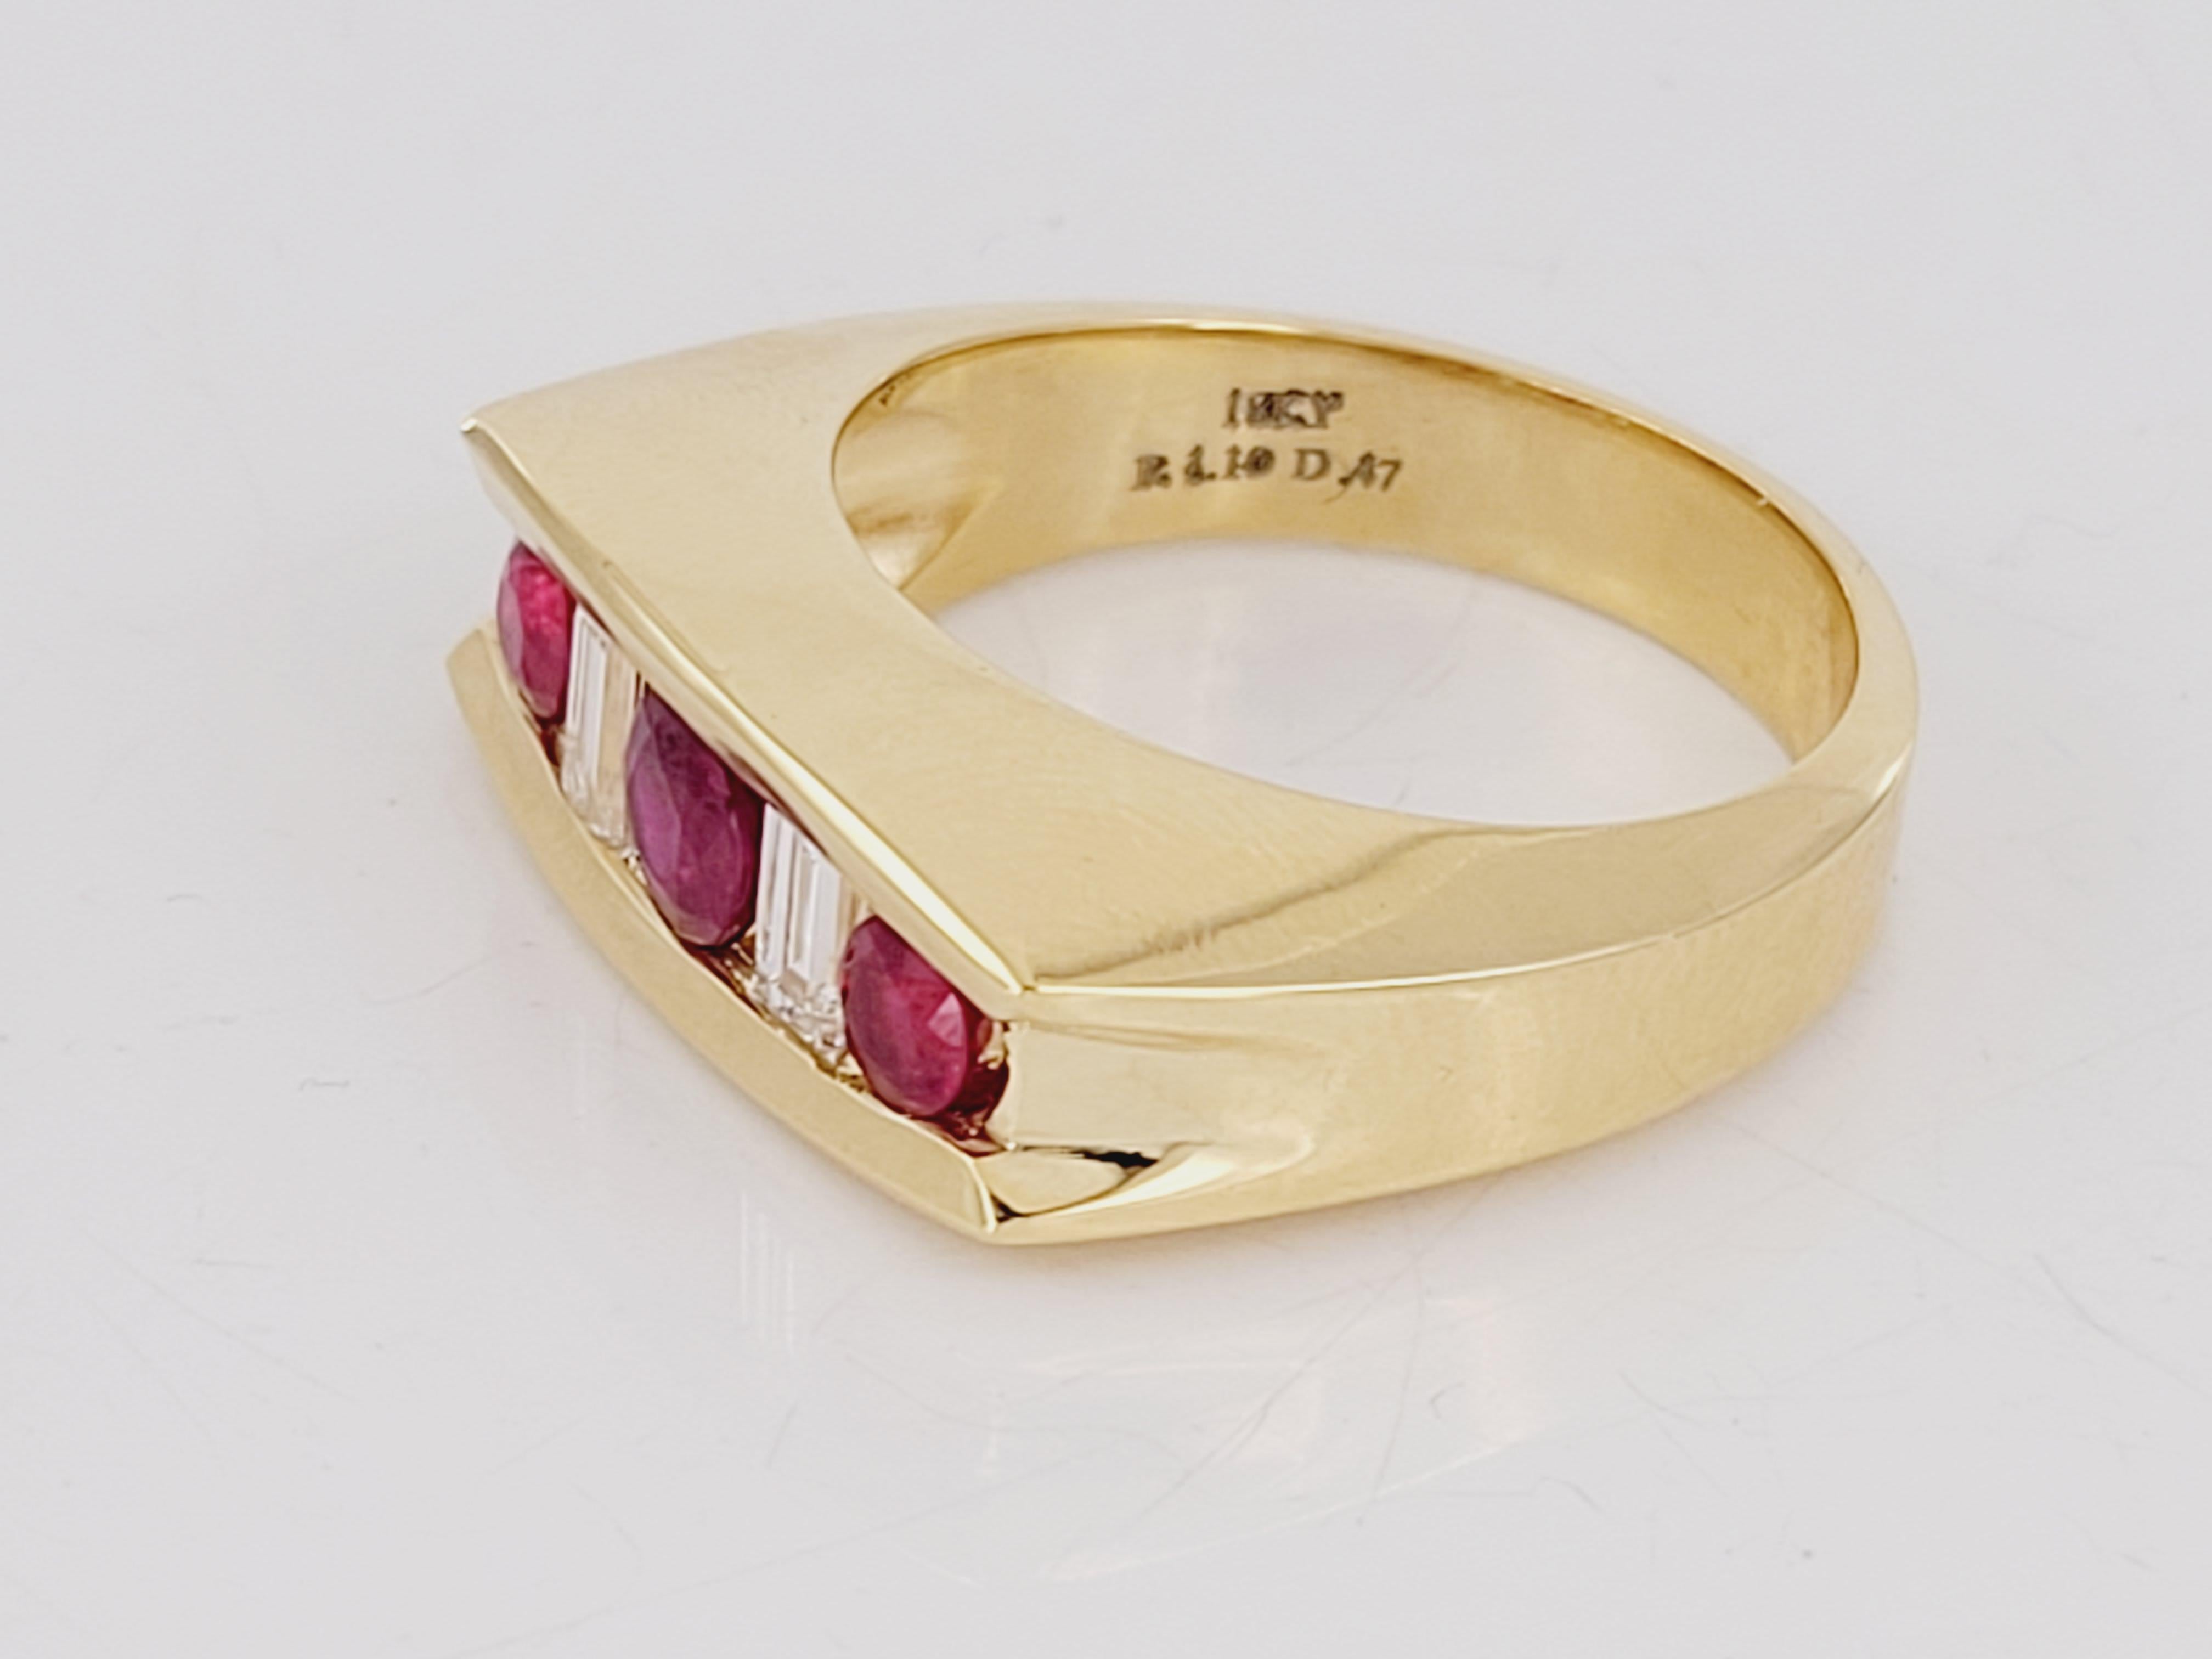 Les rubis birmans sont les pierres précieuses les plus rares au monde en raison de leur éclat rouge intense.
Bracelet pour homme en or jaune 18 carats, rubis de Birmanie et diamants blancs. Les diamants sont taillés en forme d'émeraude, pour un